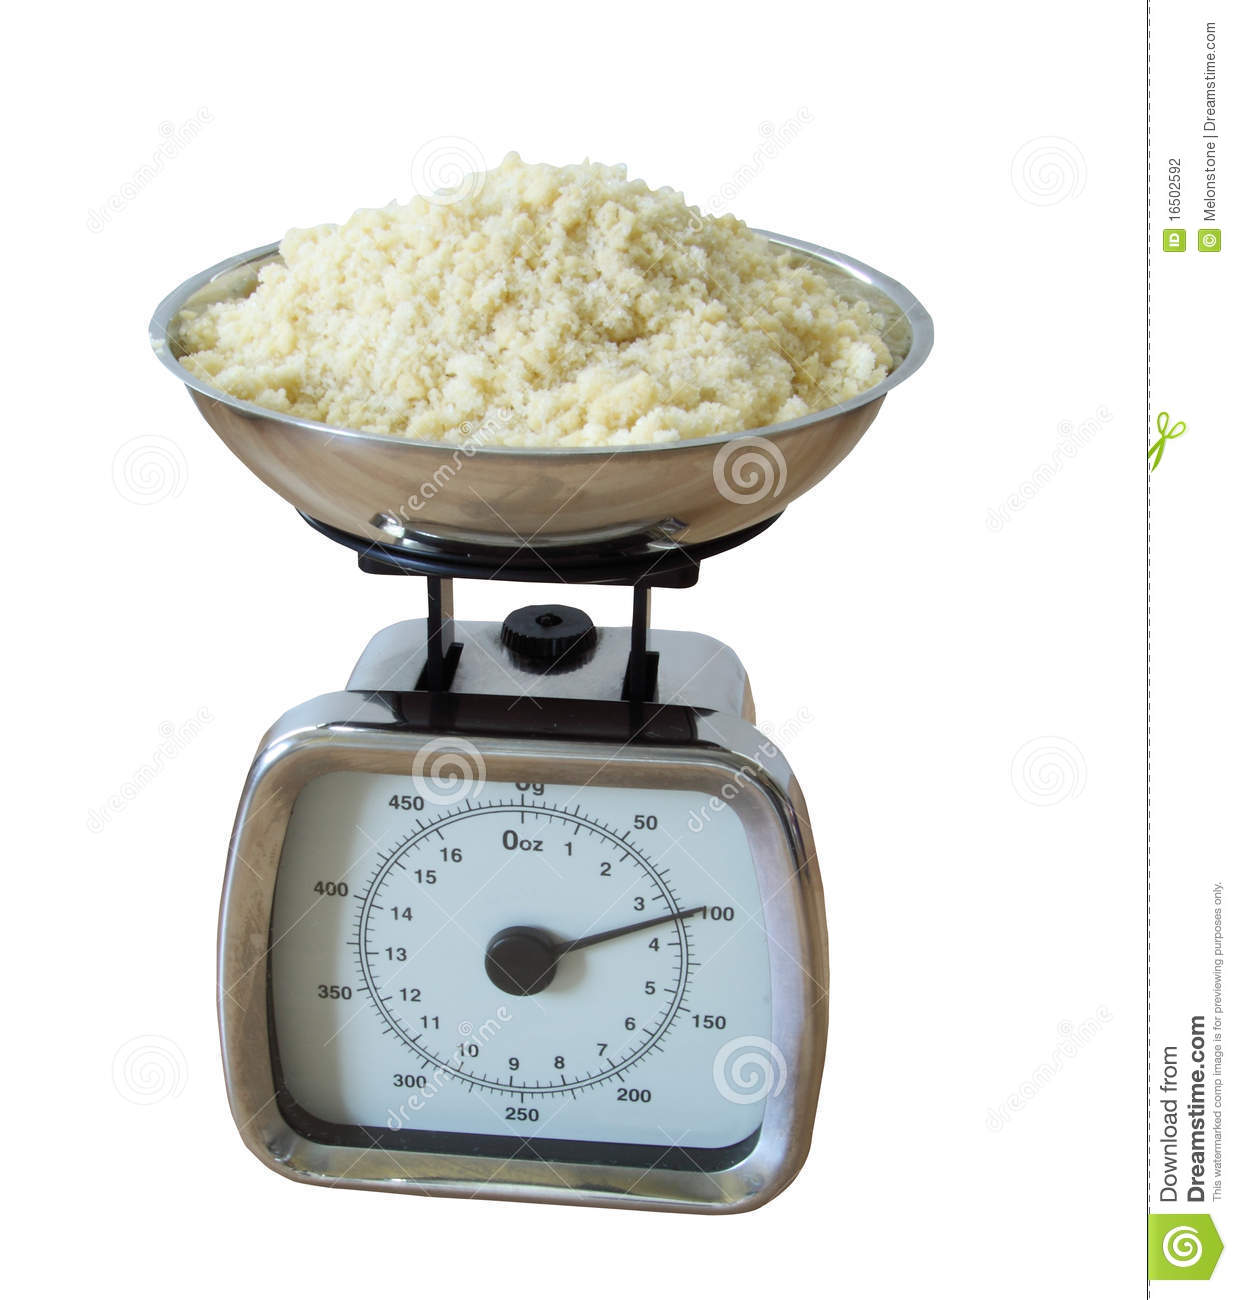 Weighing Baking Ingredients Stock Photography   Image  16502592